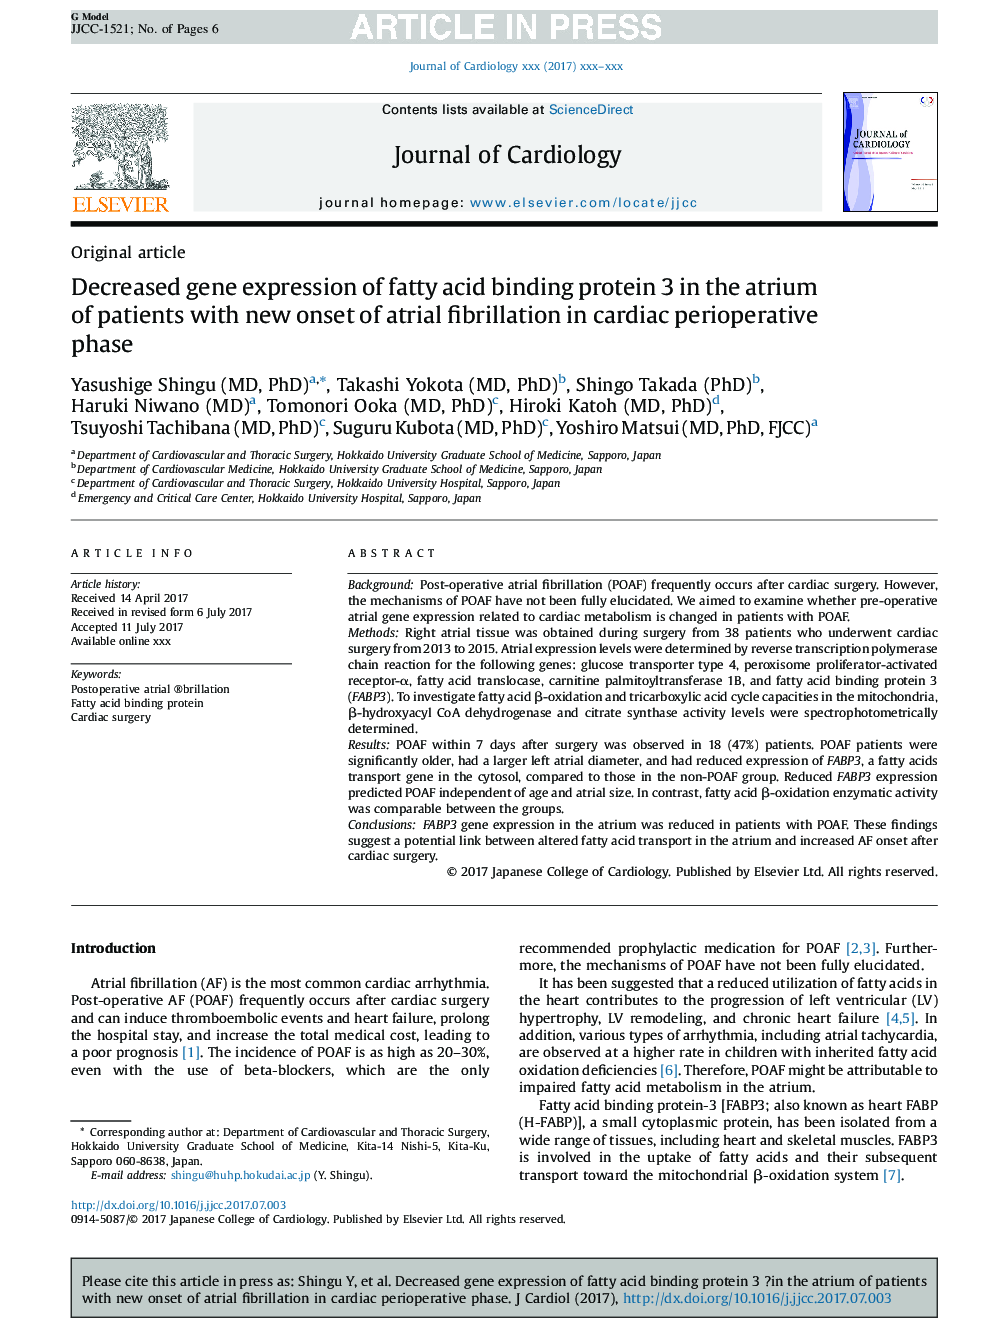 کاهش بیان ژن پروتئین 3 اتصال دهنده اسید چرب در دهلیز بیماران مبتلا به فیبریلاسیون دهلیزی در مرحله فیزیوتراپی 